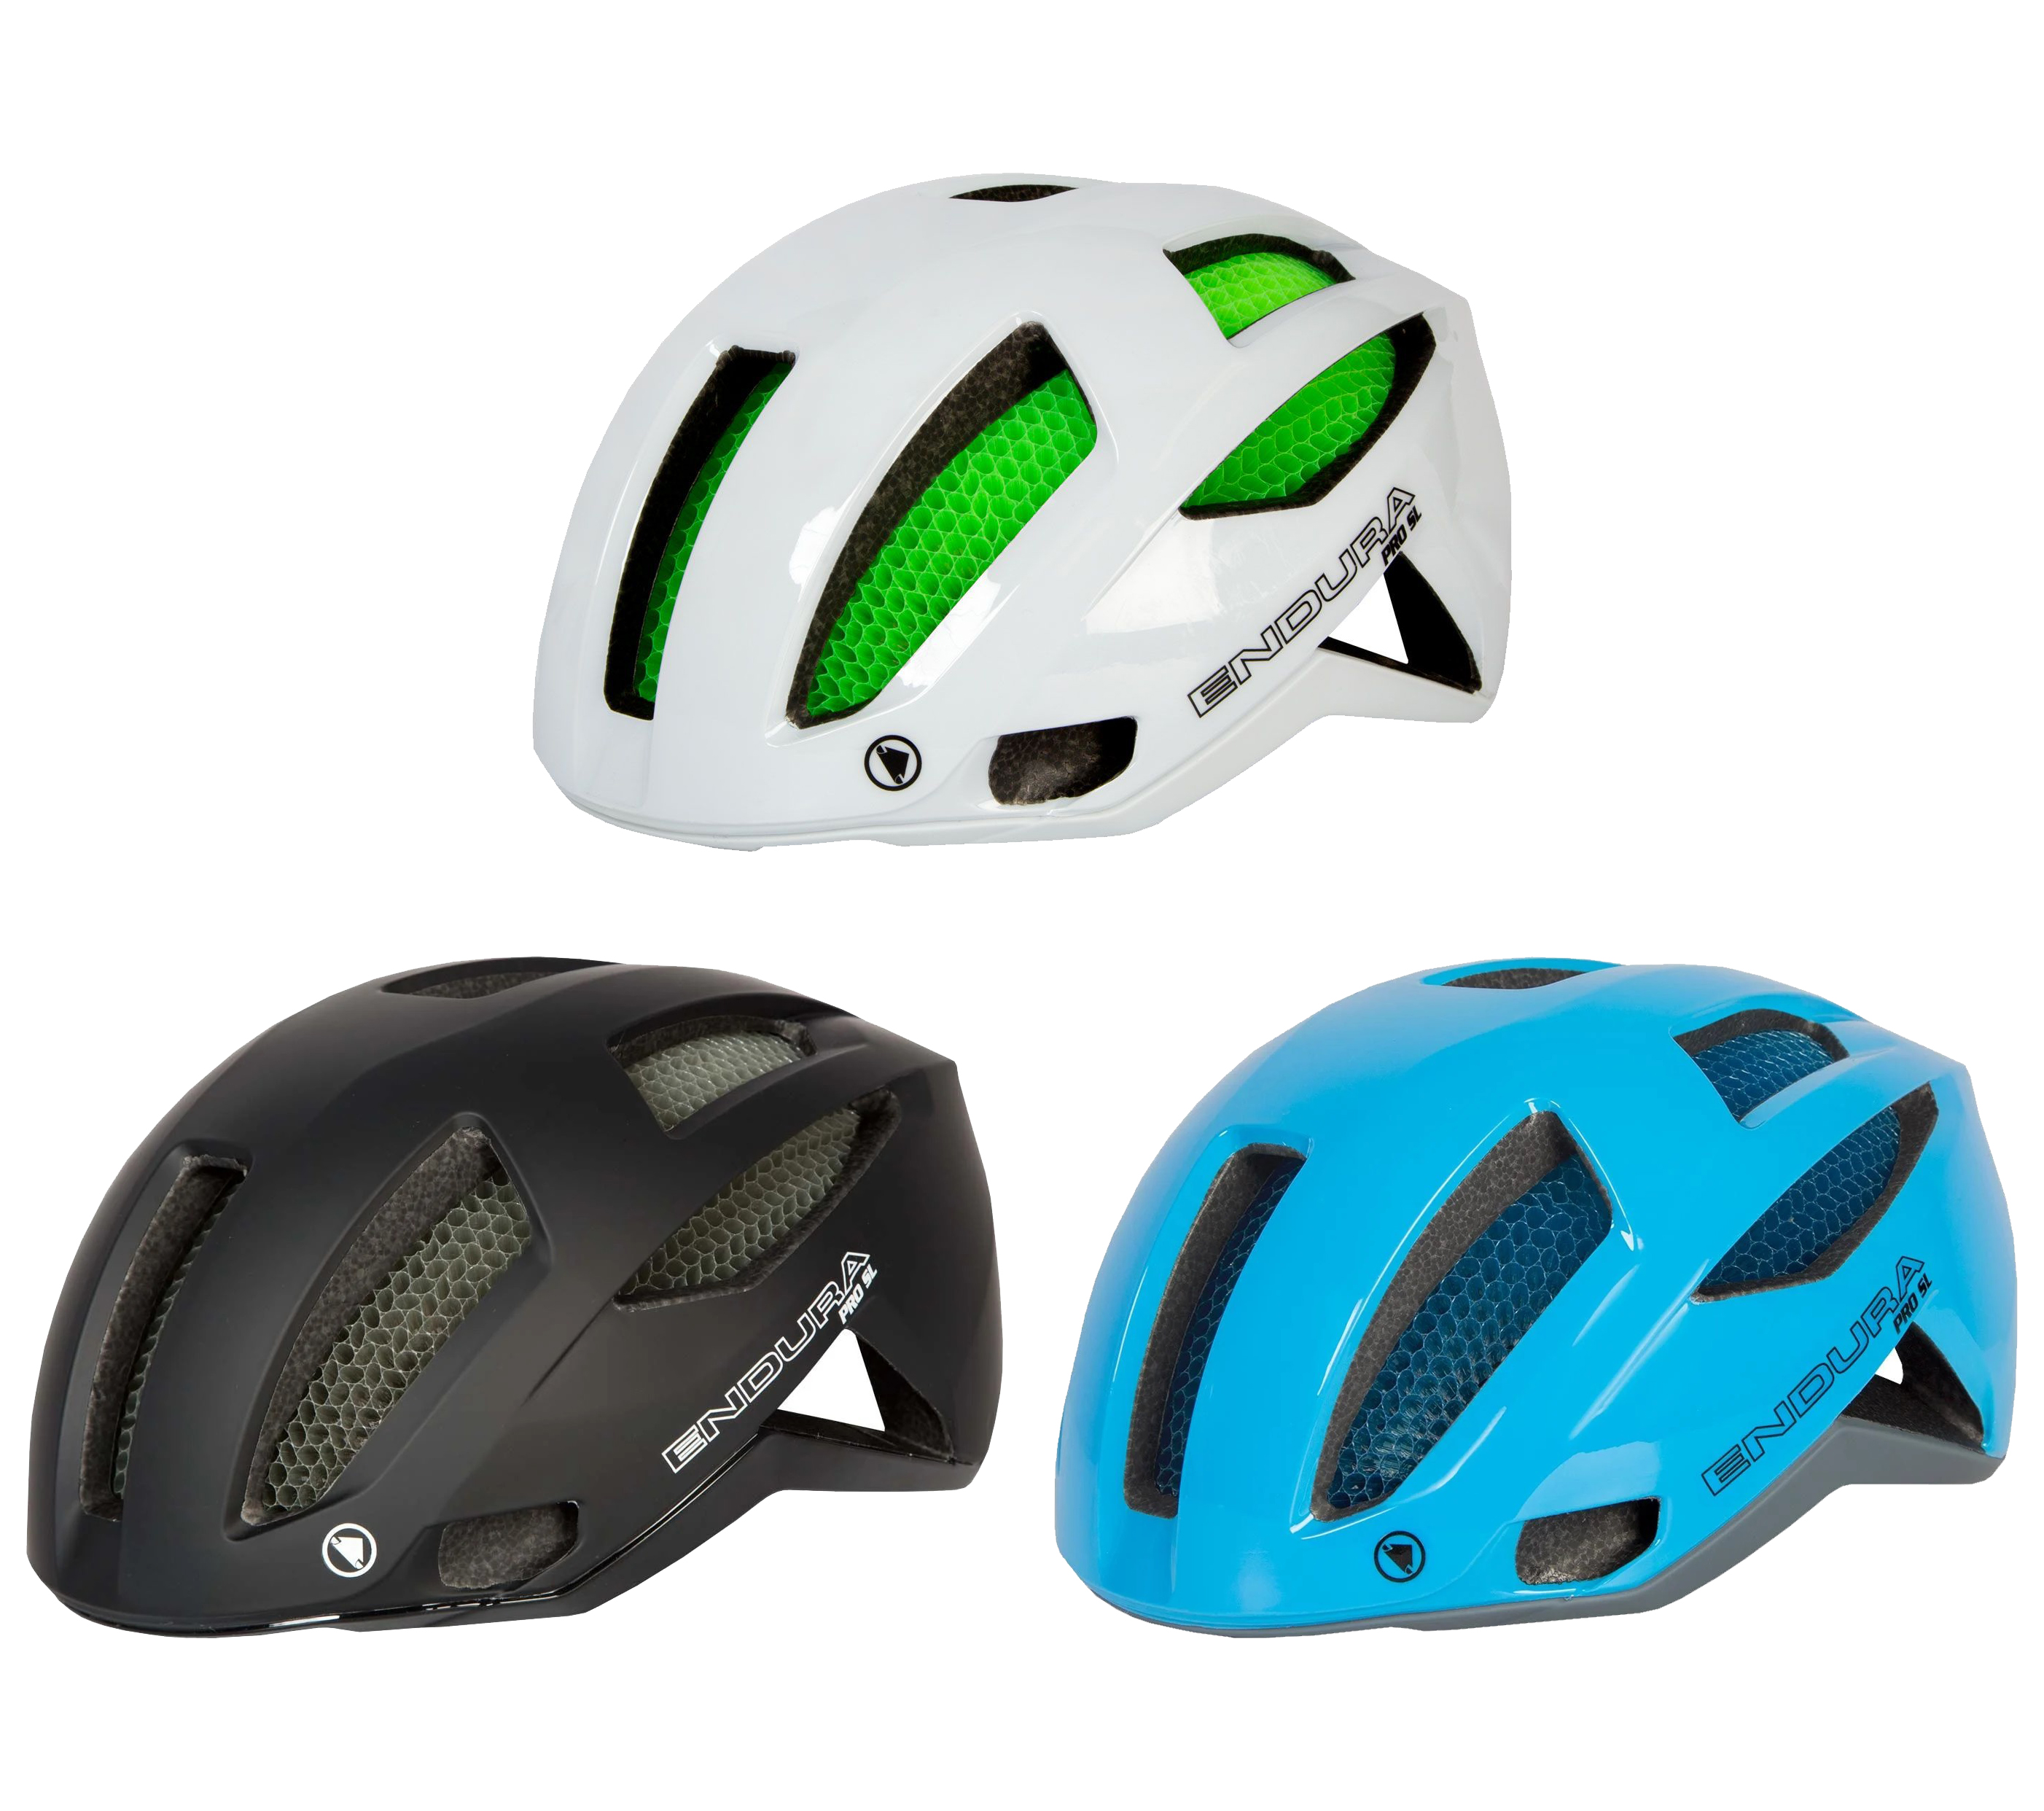 Afbeeldingsresultaat voor endura Pro SL helm